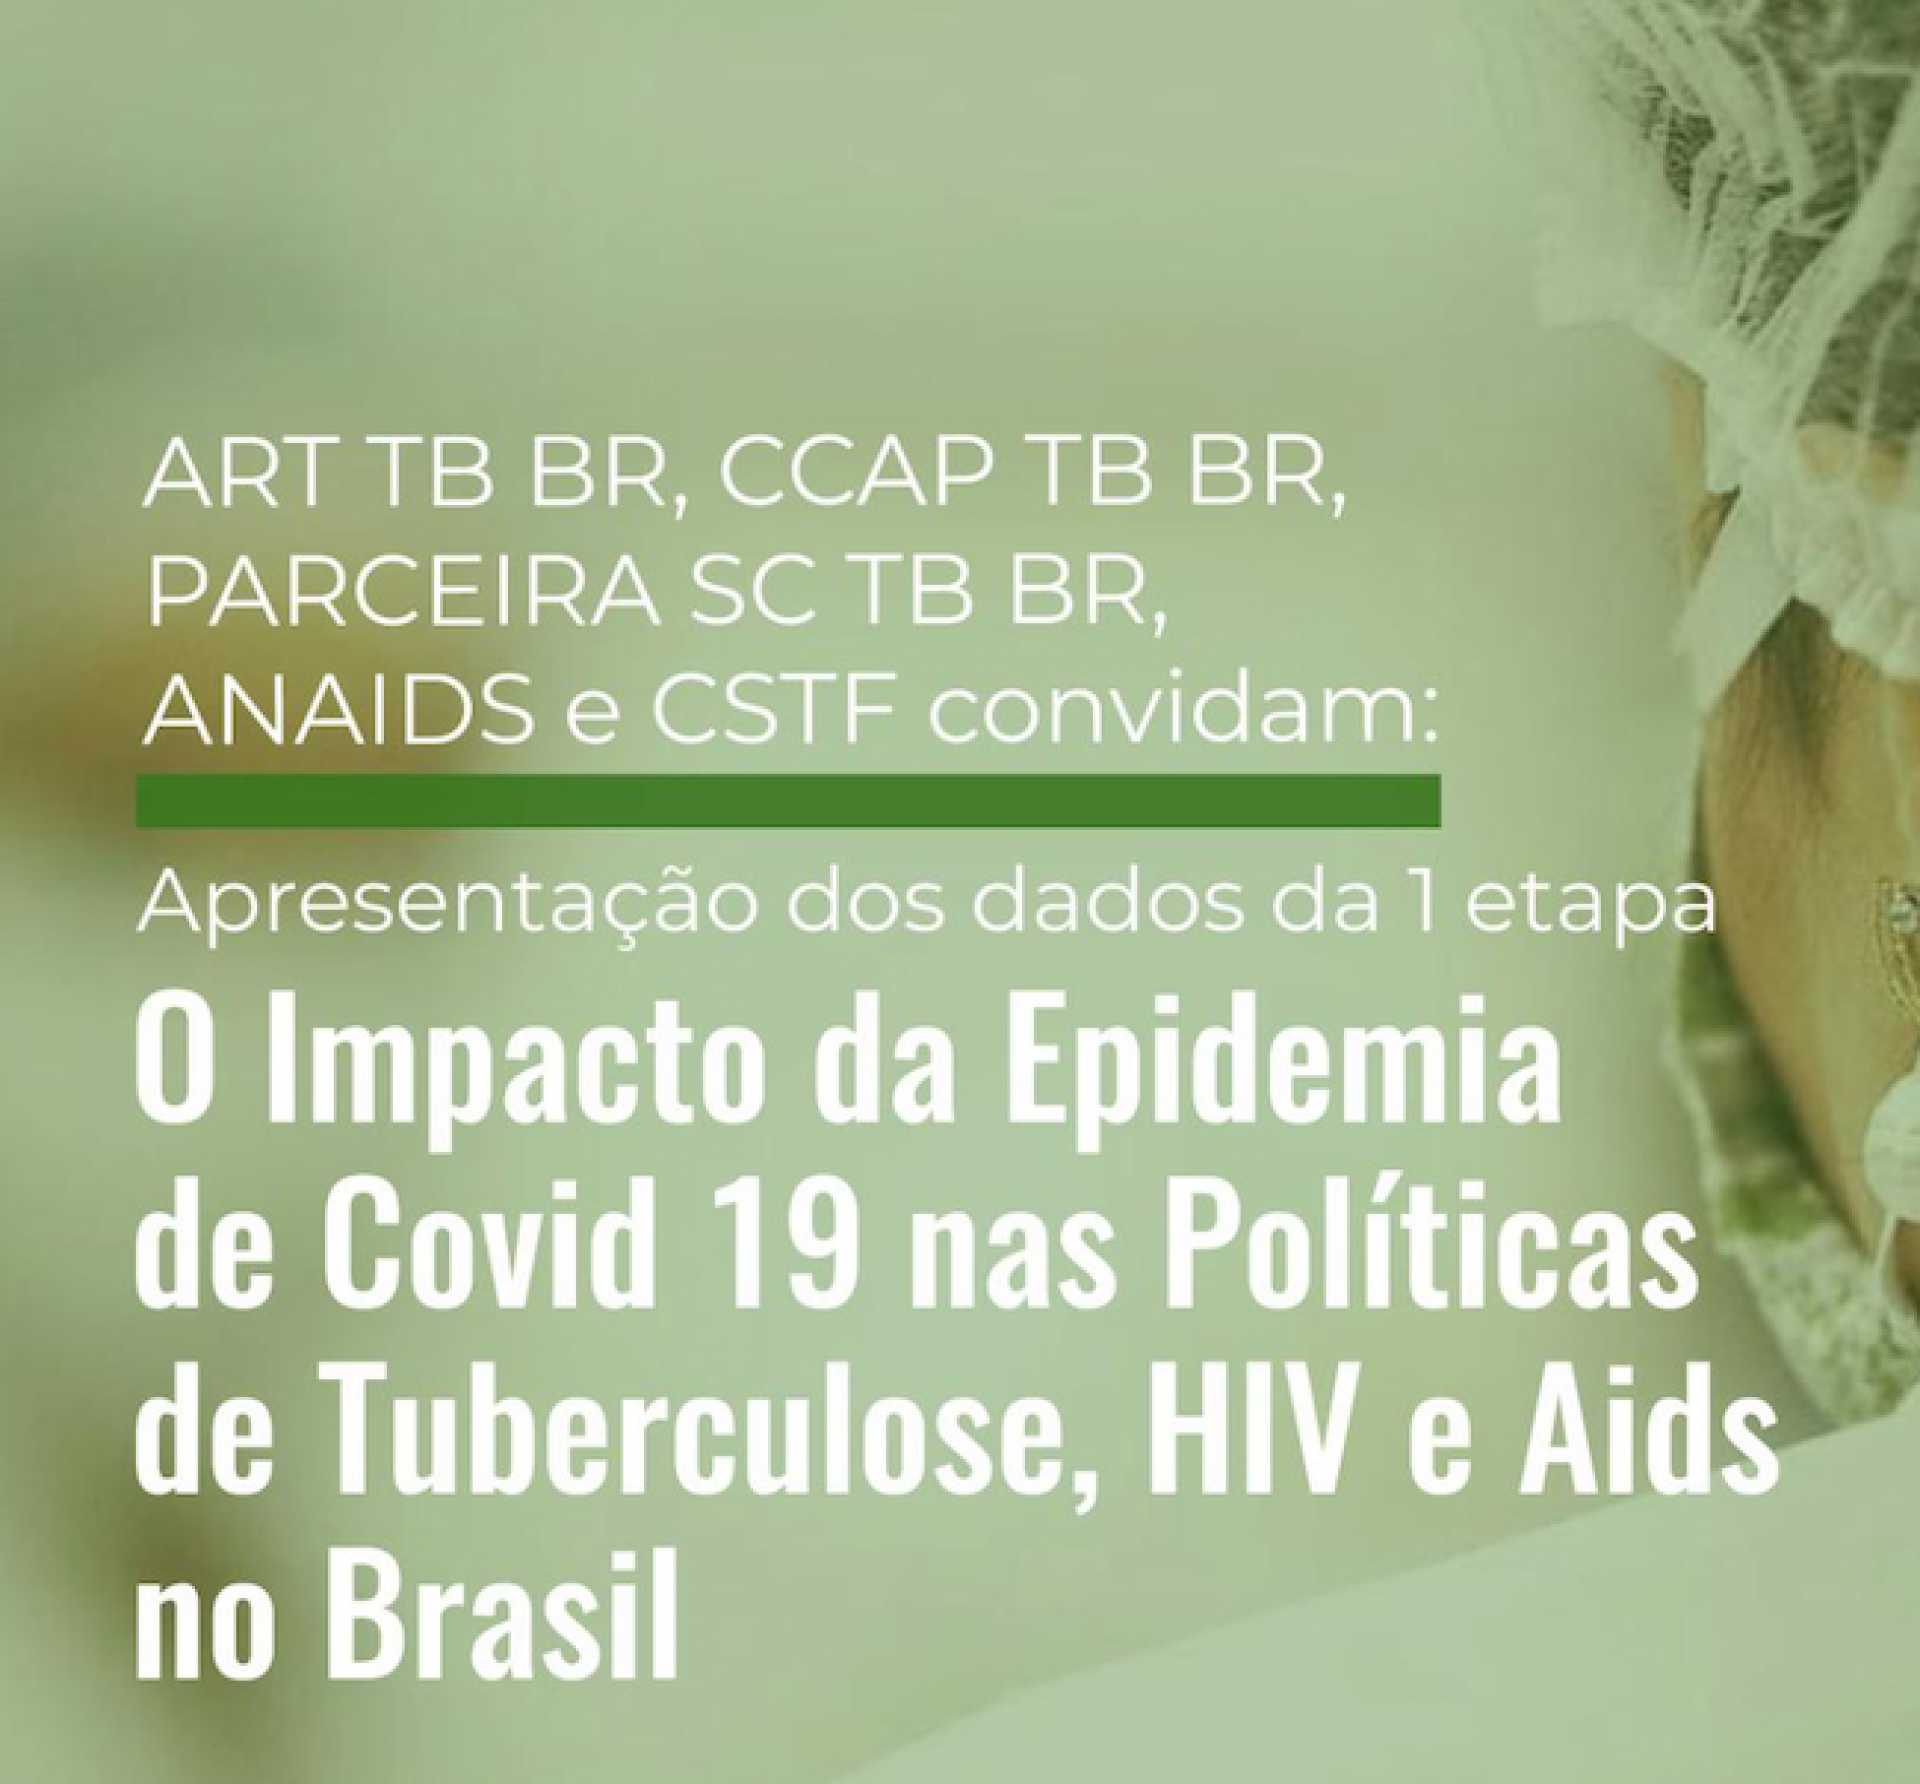 Resultado do levantamento do impacto da covid-19 em aids e TB será apresentado 4a-feira